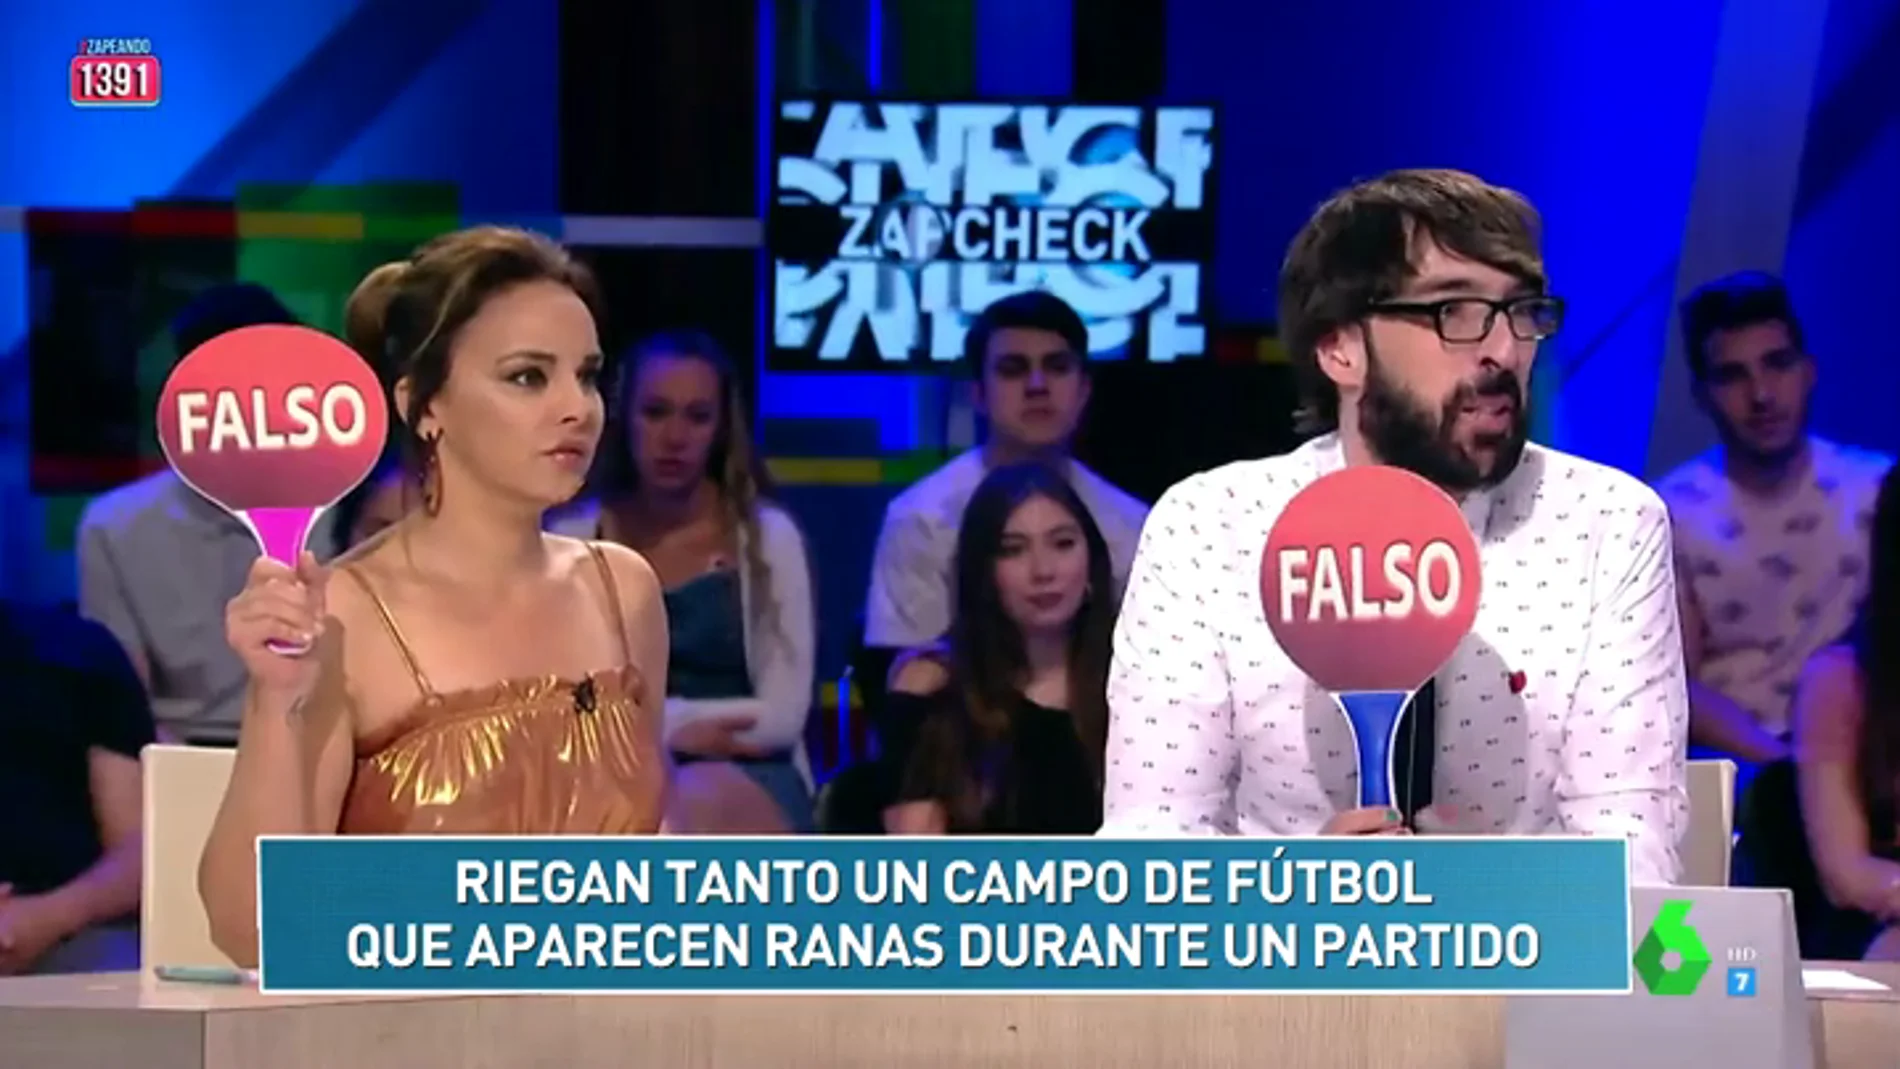 Aparecen ranas en un campo de fútbol tras regar mucho el césped y otras noticias del Zapckech de Cristina Pedroche